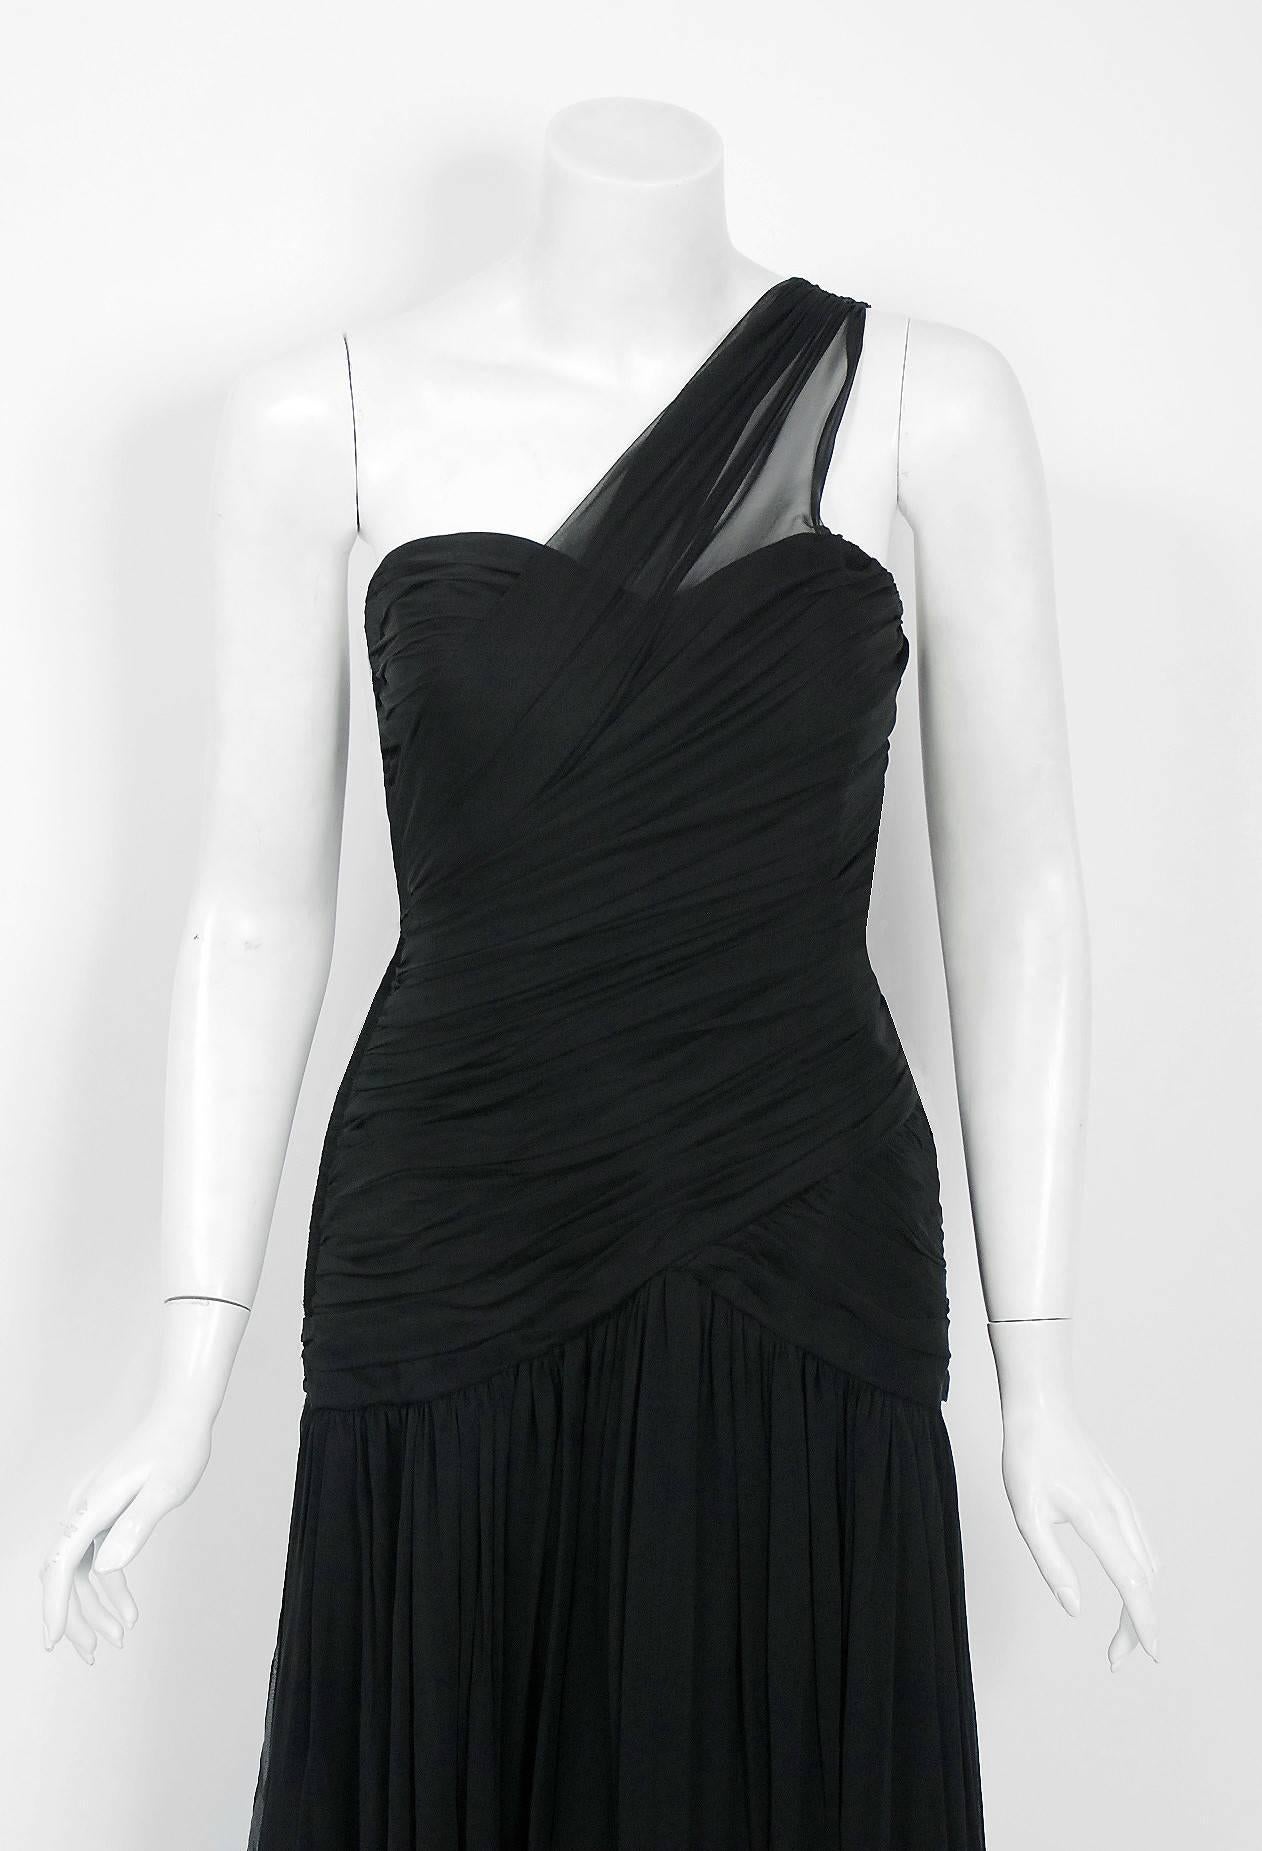 Cette robe à couper le souffle du créateur Adele Simpson, datant du milieu des années 1970, est l'une des robes noires les plus flatteuses que j'ai vues depuis longtemps. Confectionné à partir d'une mousseline de soie légère, le tissu se sent comme